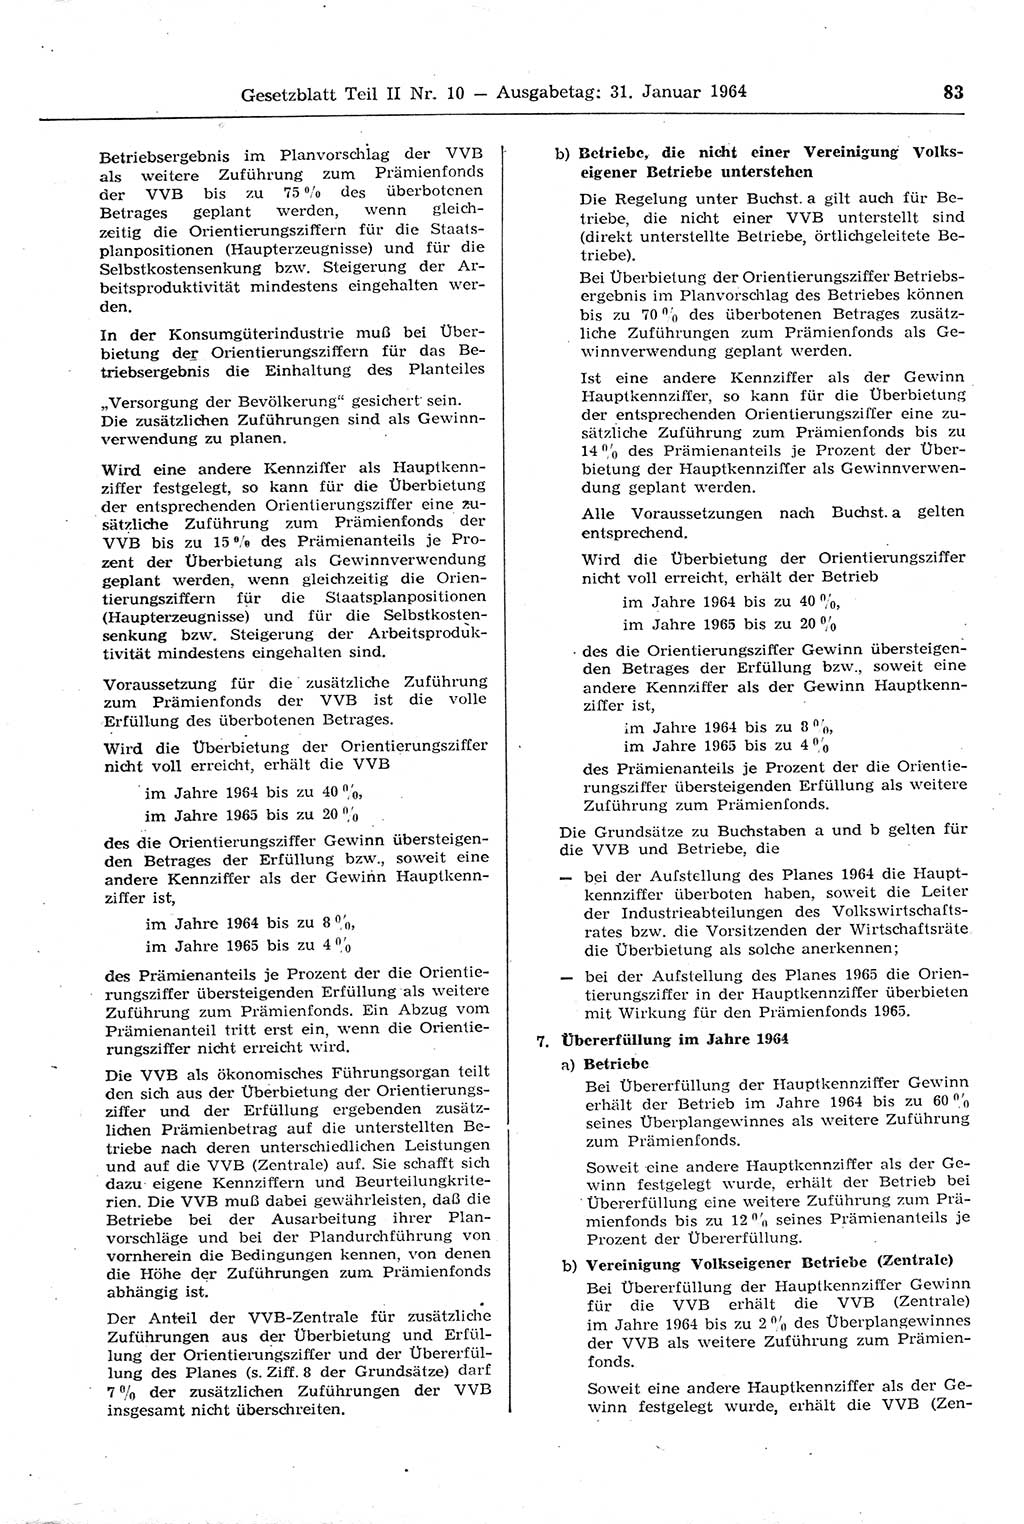 Gesetzblatt (GBl.) der Deutschen Demokratischen Republik (DDR) Teil ⅠⅠ 1964, Seite 83 (GBl. DDR ⅠⅠ 1964, S. 83)